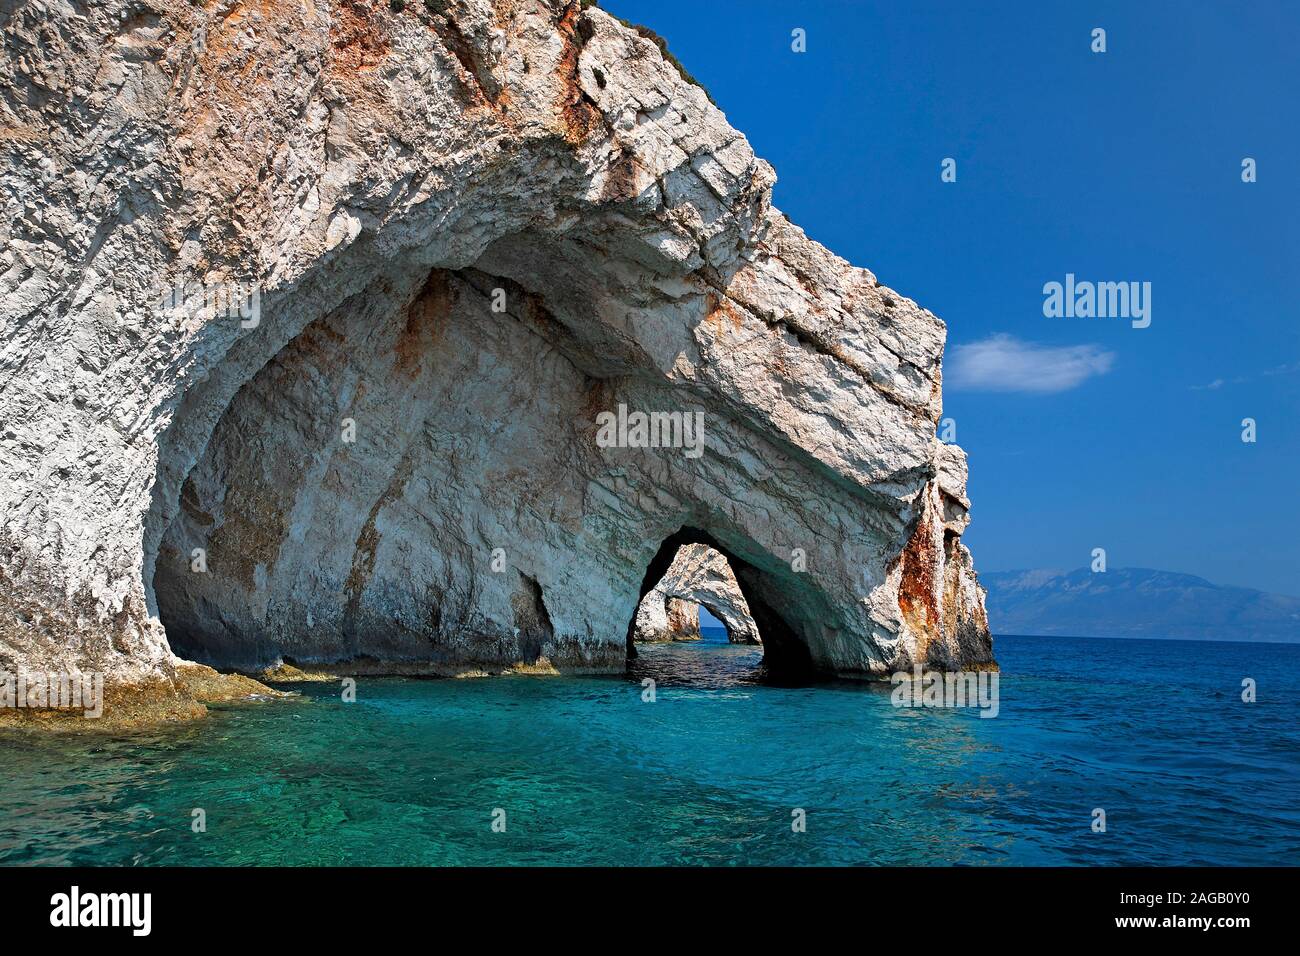 Costa rocciosa di Kap Capo Skinari, ubicazione delle grotte blu, Zante, Island, Grecia Foto Stock